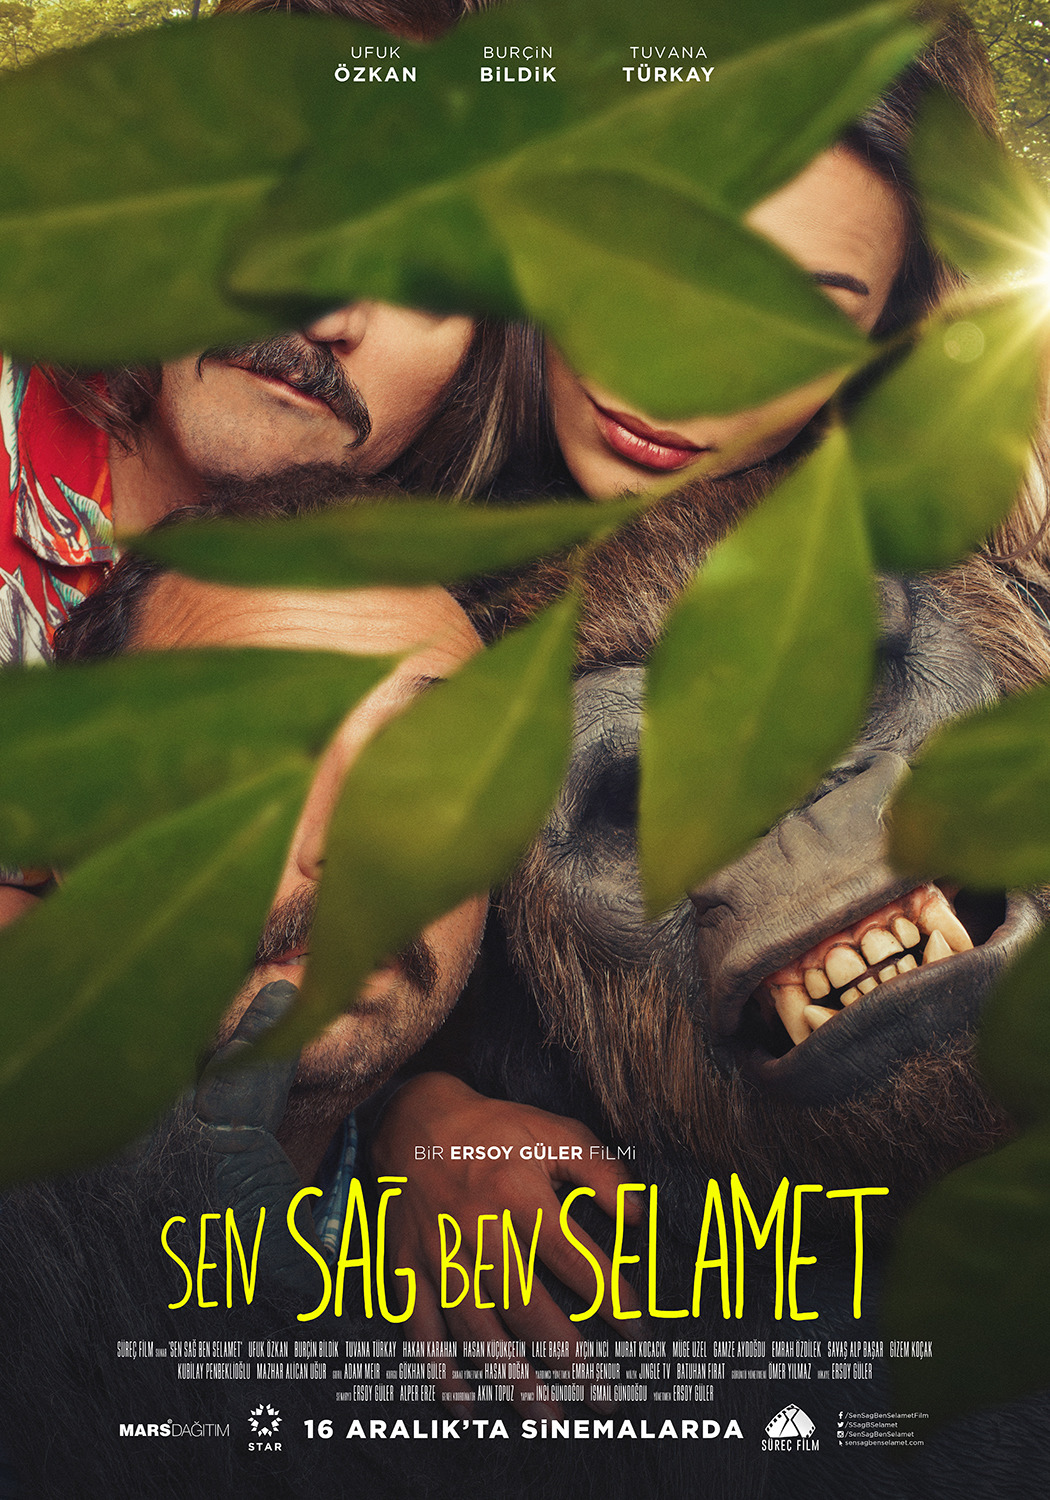 Extra Large Movie Poster Image for Sen Sag Ben Selamet (#3 of 4)